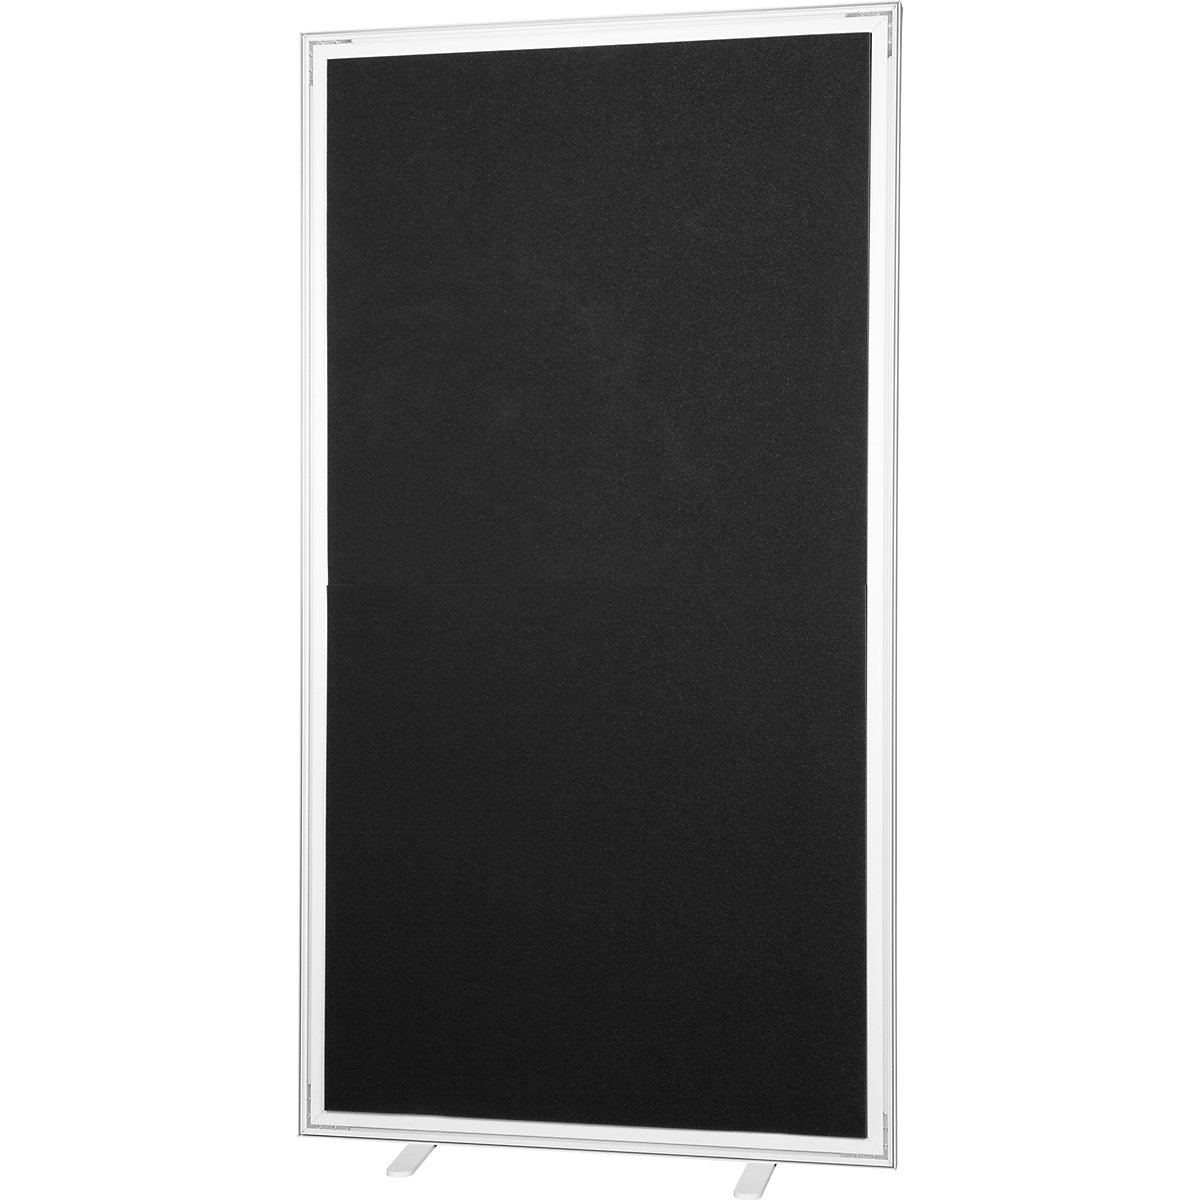 Pared separadora easyScreen, monocolor, con aislamiento acústico, negro, anchura 1600 mm-13